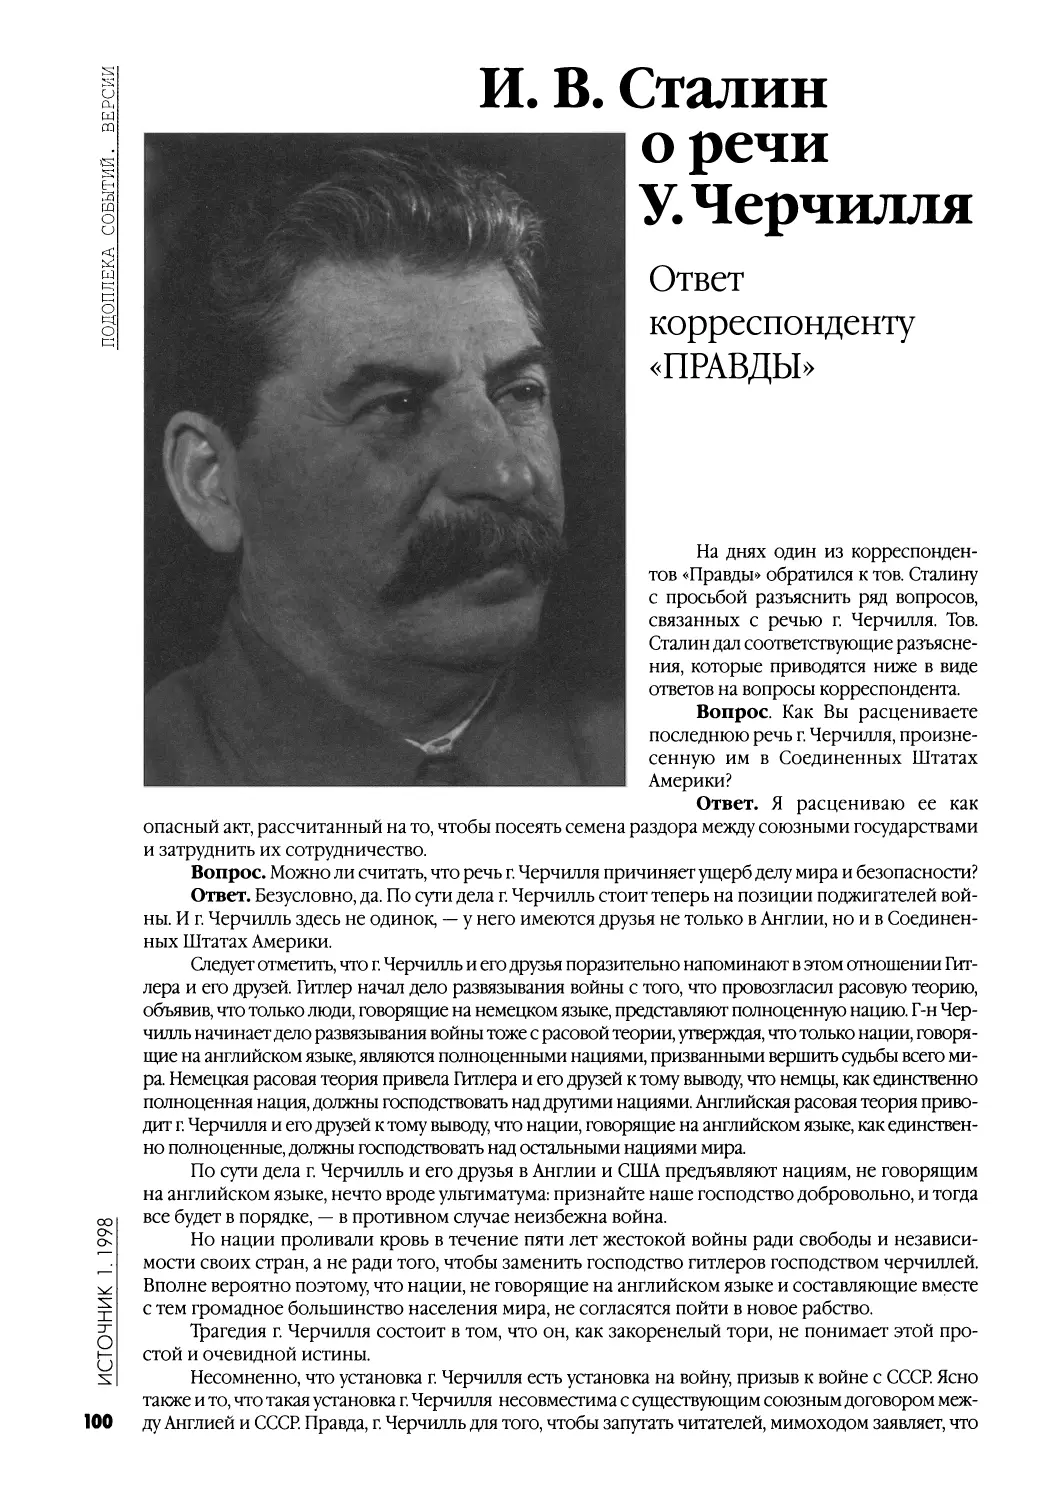 И. В. Сталин о речи У. Черчилля. Ответ корреспонденту «Правды»